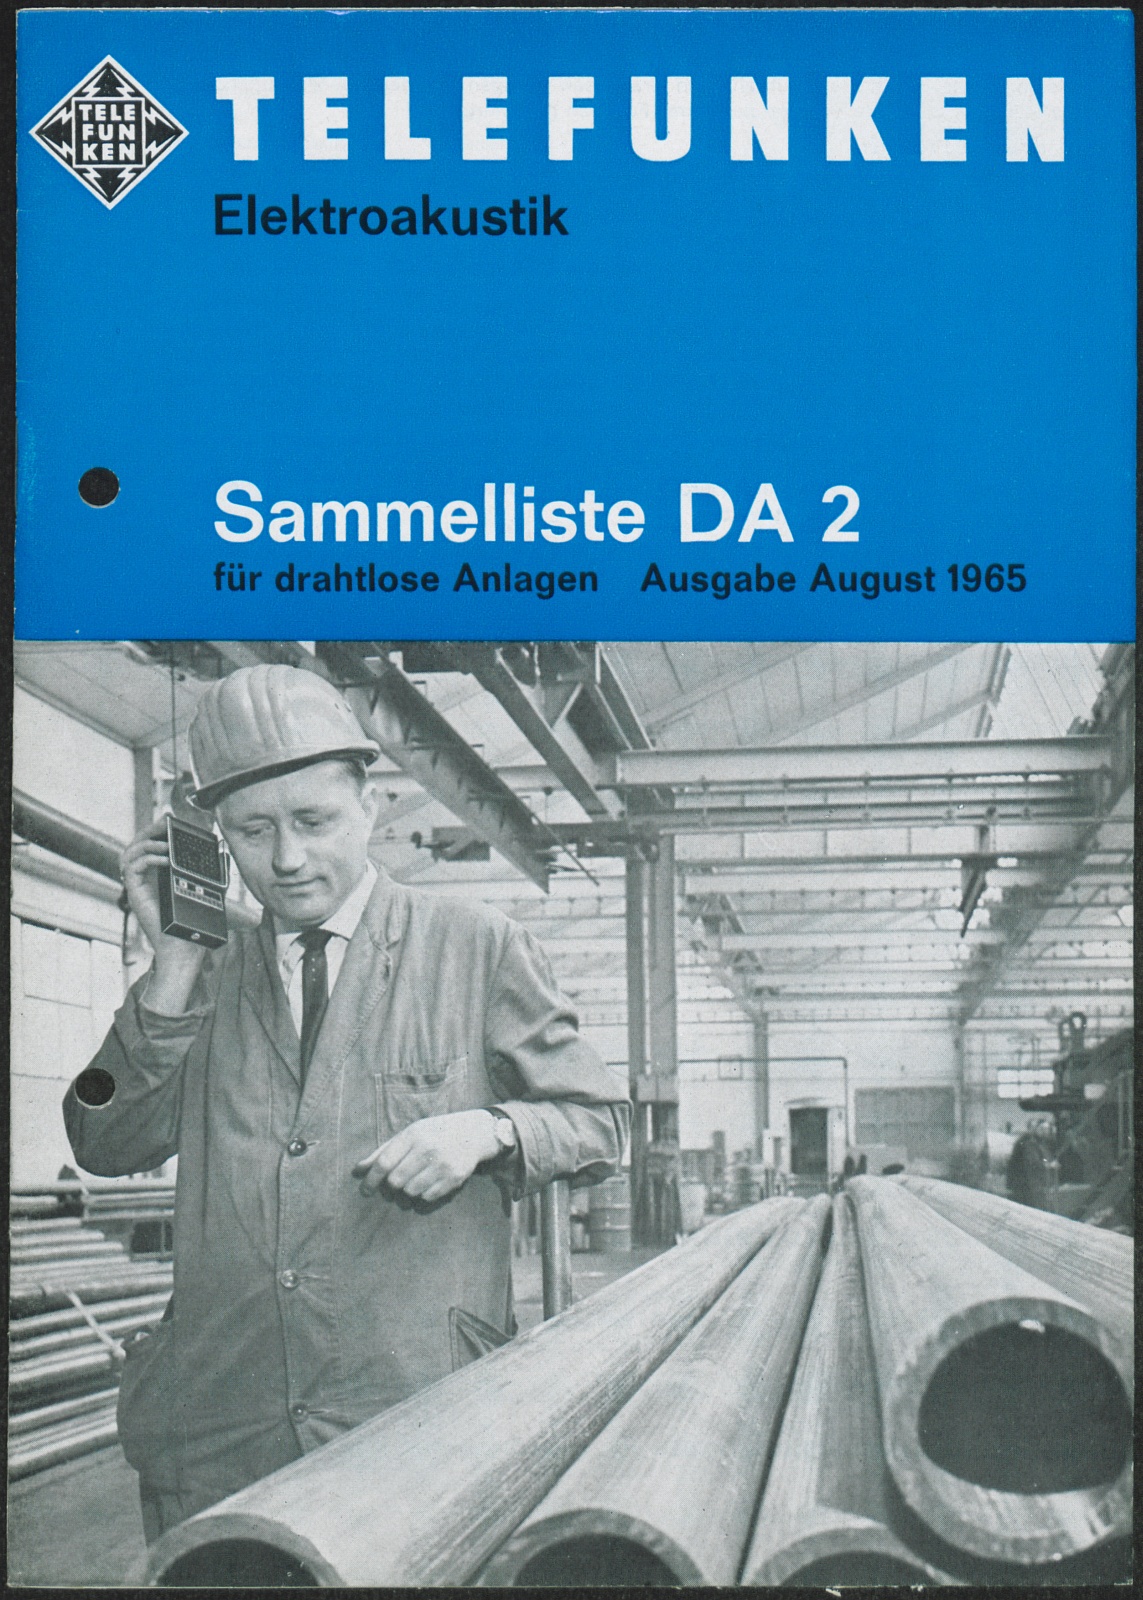 Geräteverzeichnis: Telefunken Elektroakustik: Sammelliste DA 2 für drahtlose Anlagen (Stiftung Deutsches Technikmuseum Berlin CC0)